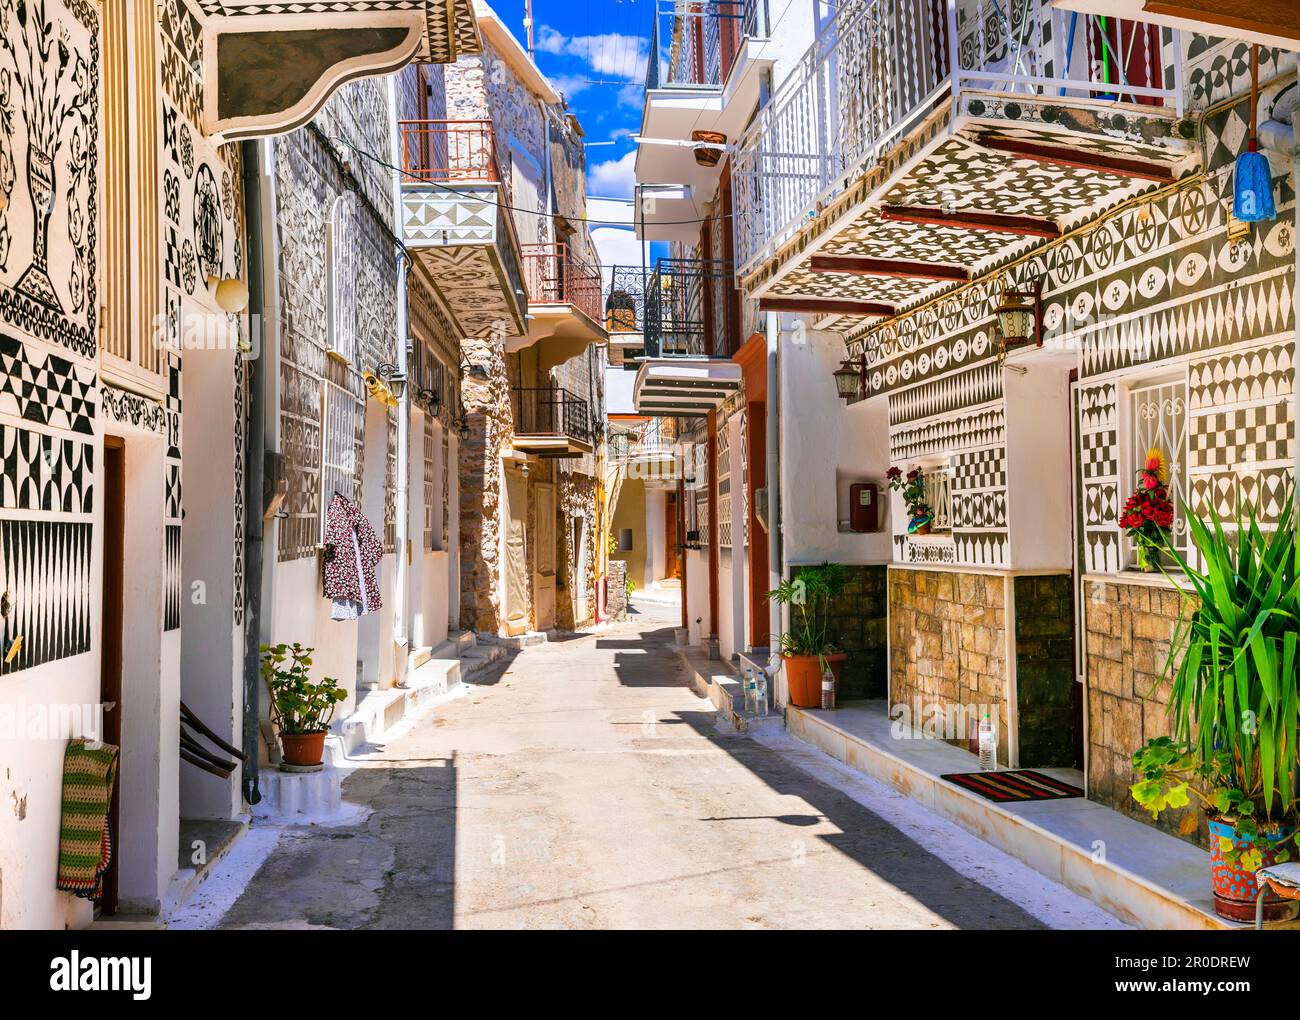 Les plus beaux villages de Grèce - unique traditionnelle Pyrgi dans l'île de Chios connu sous le nom de "village peint" Banque D'Images